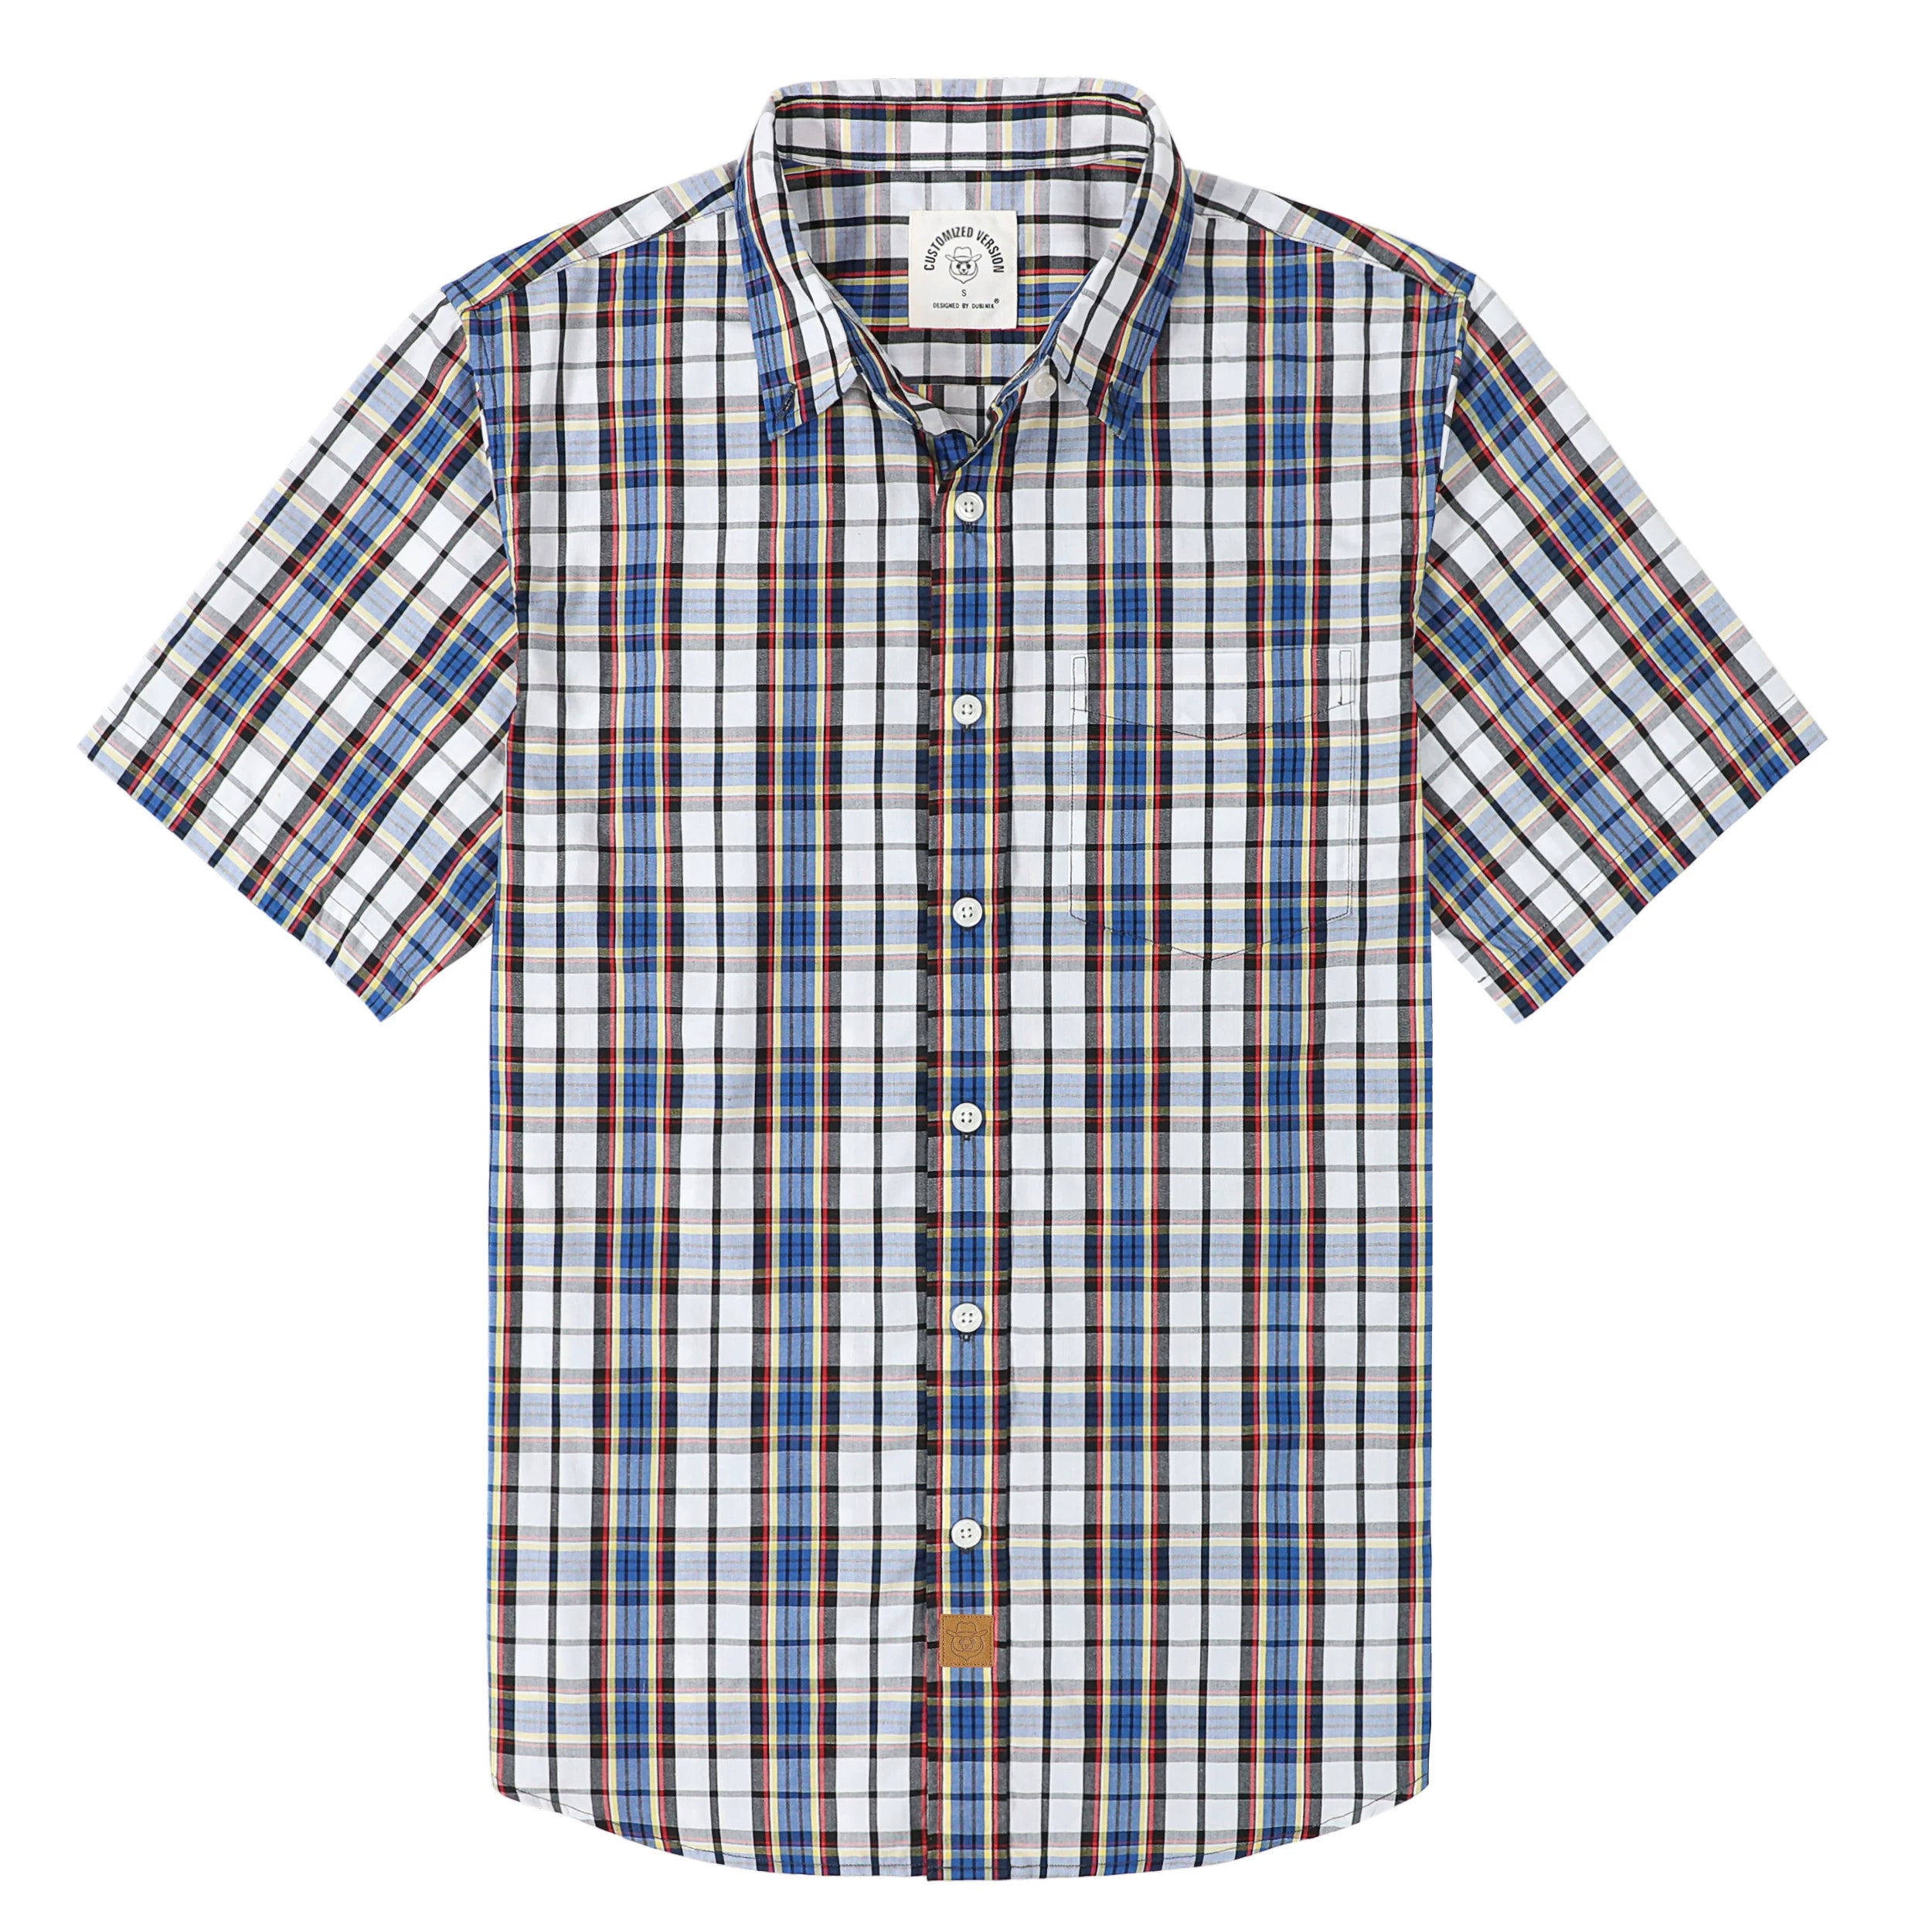 Dubinik® Mens Short Sleeve Button Down Shirts Summer Vintage Short Sleeve Button Down Men Lightweight Men's Casual Shirts#51009